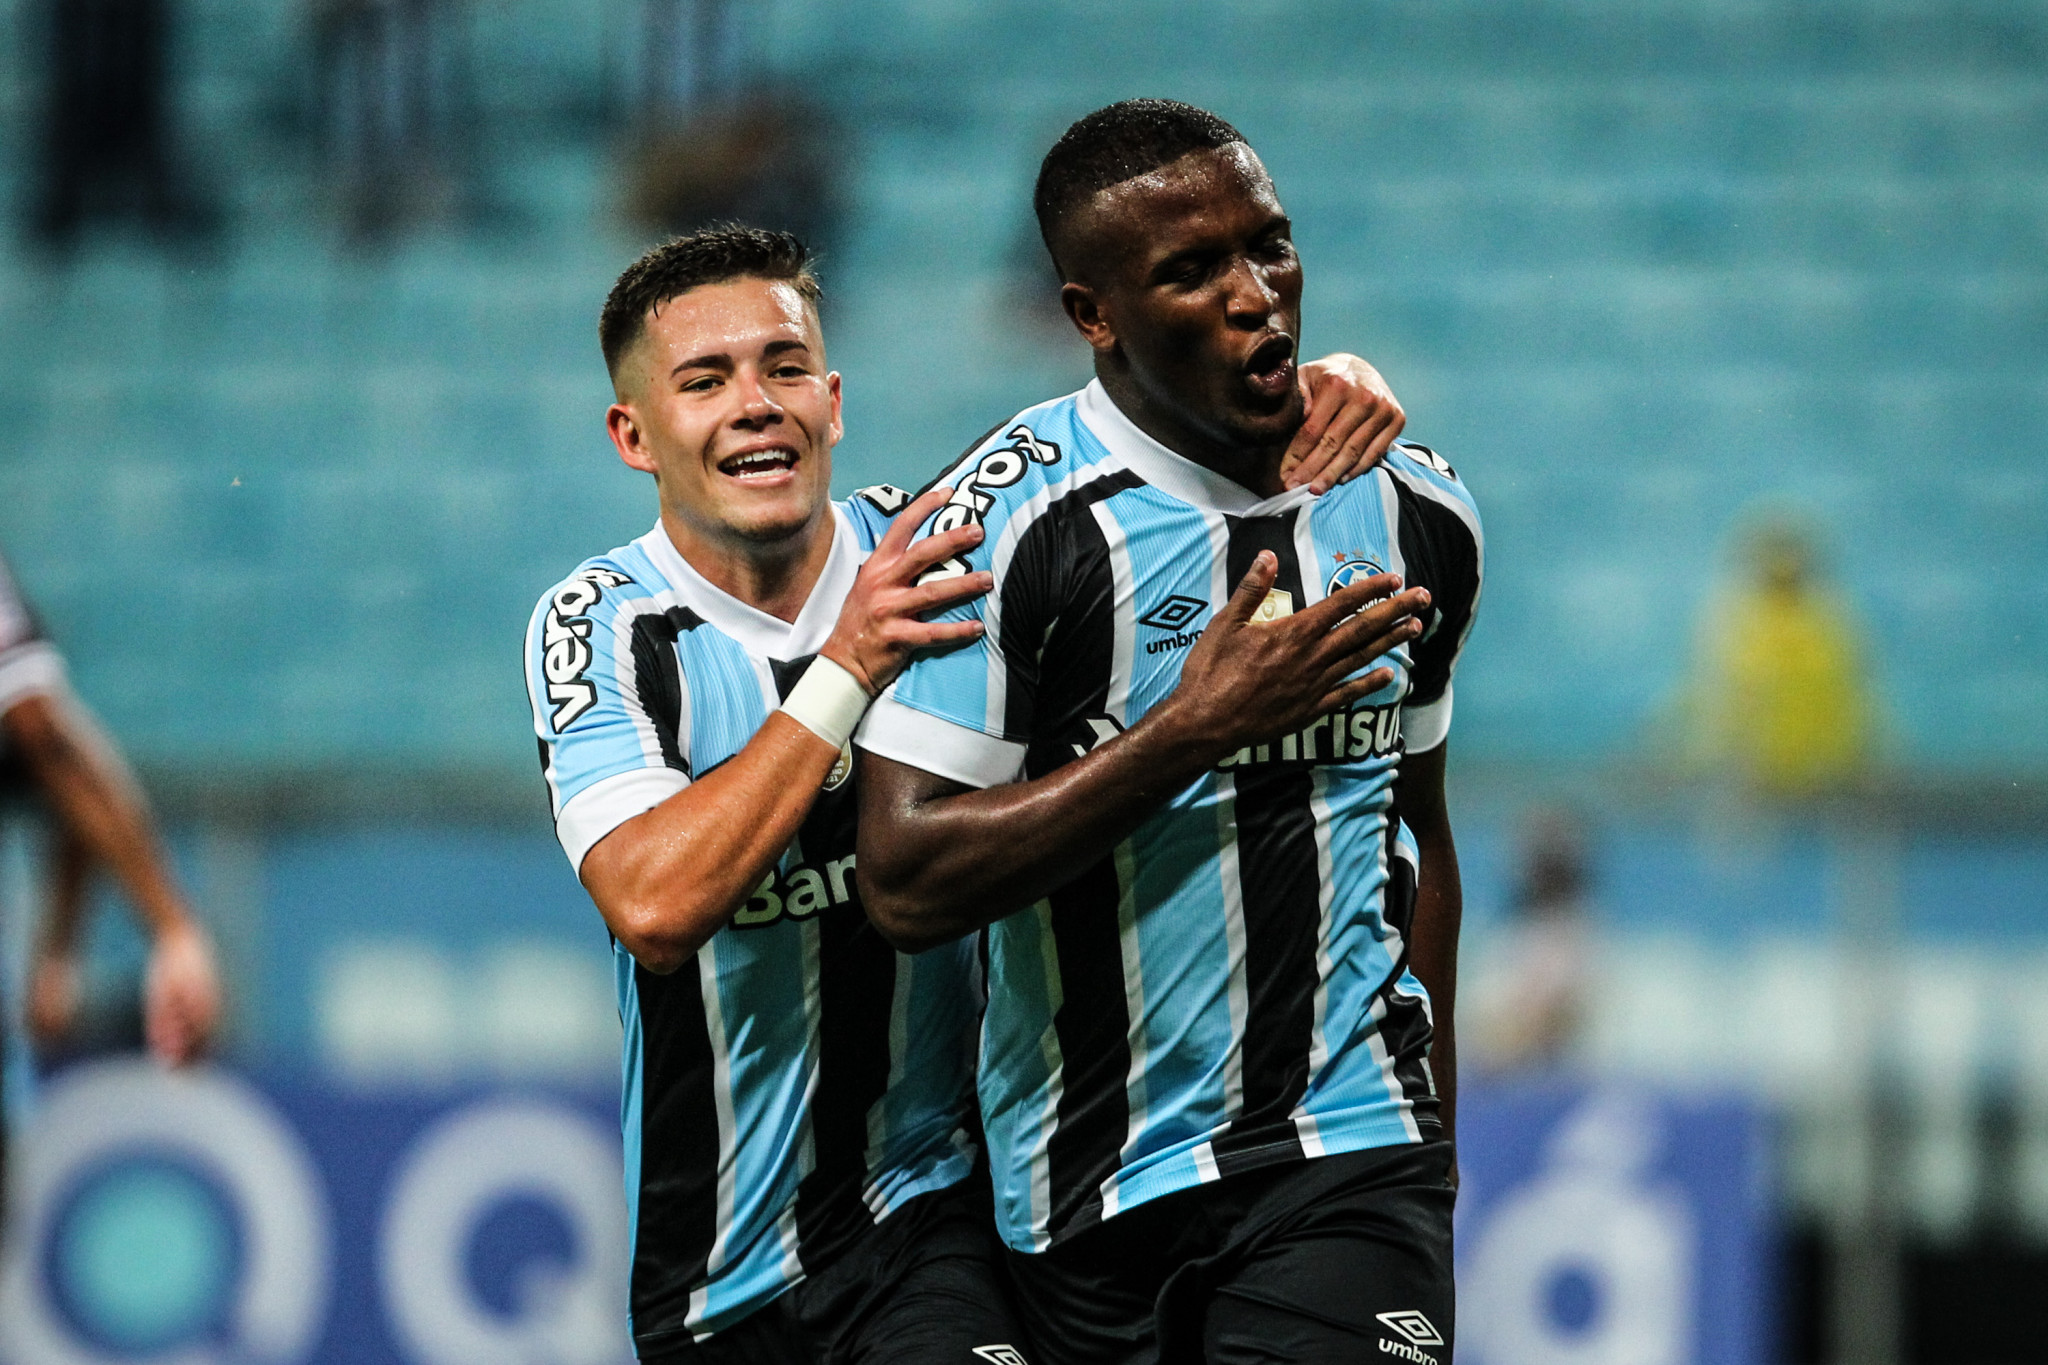 Com gols de Elias Manoel, Grêmio estreia no Gauchão com vitória sobre o Caxias